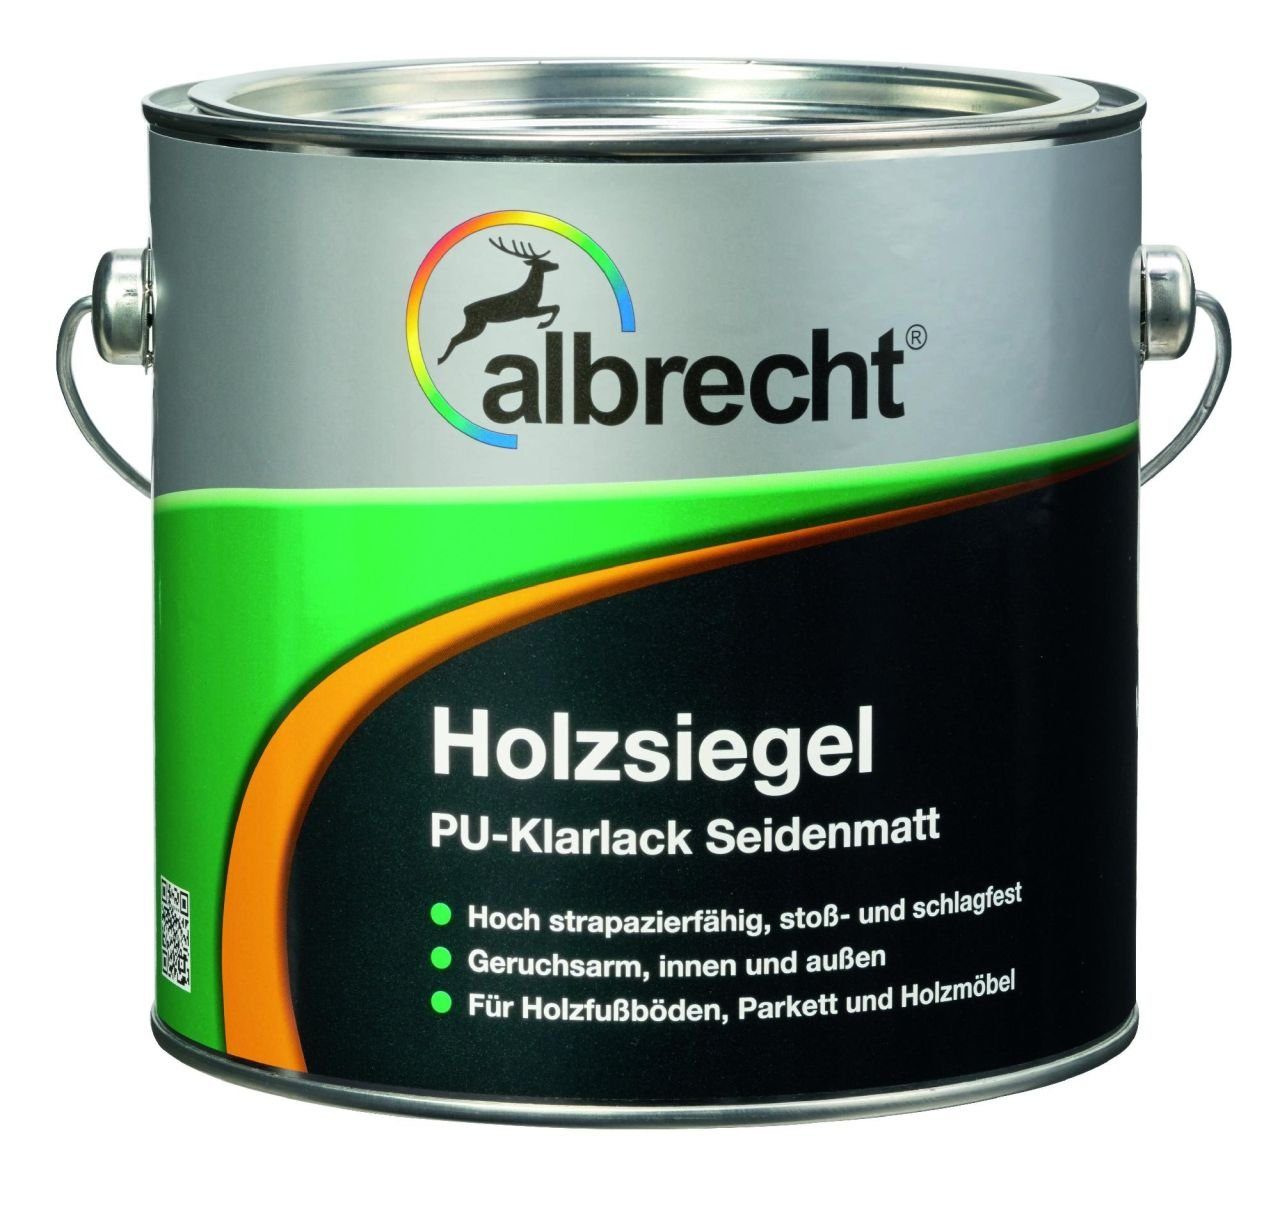 PU L Holzschutzlasur Albrecht Holzsiegel farblos 2,5 Albrecht seidenmatt